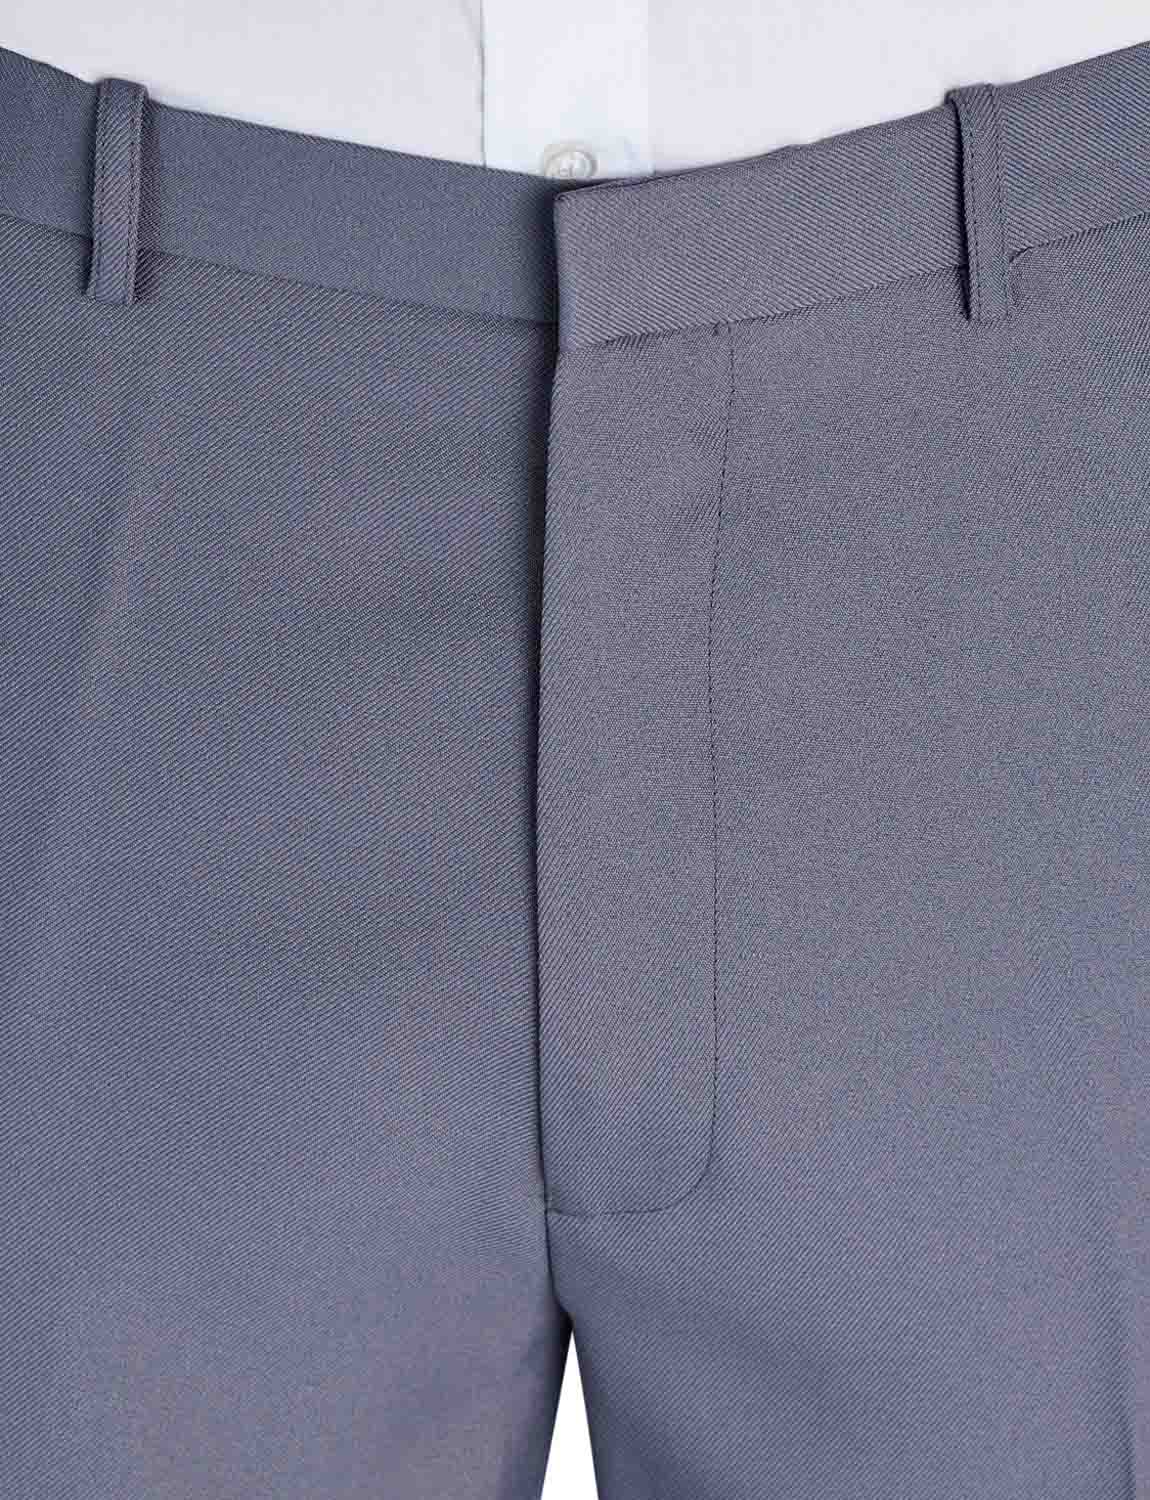 Chums stretch waist formal smart work trousers | hidden elasticated ...